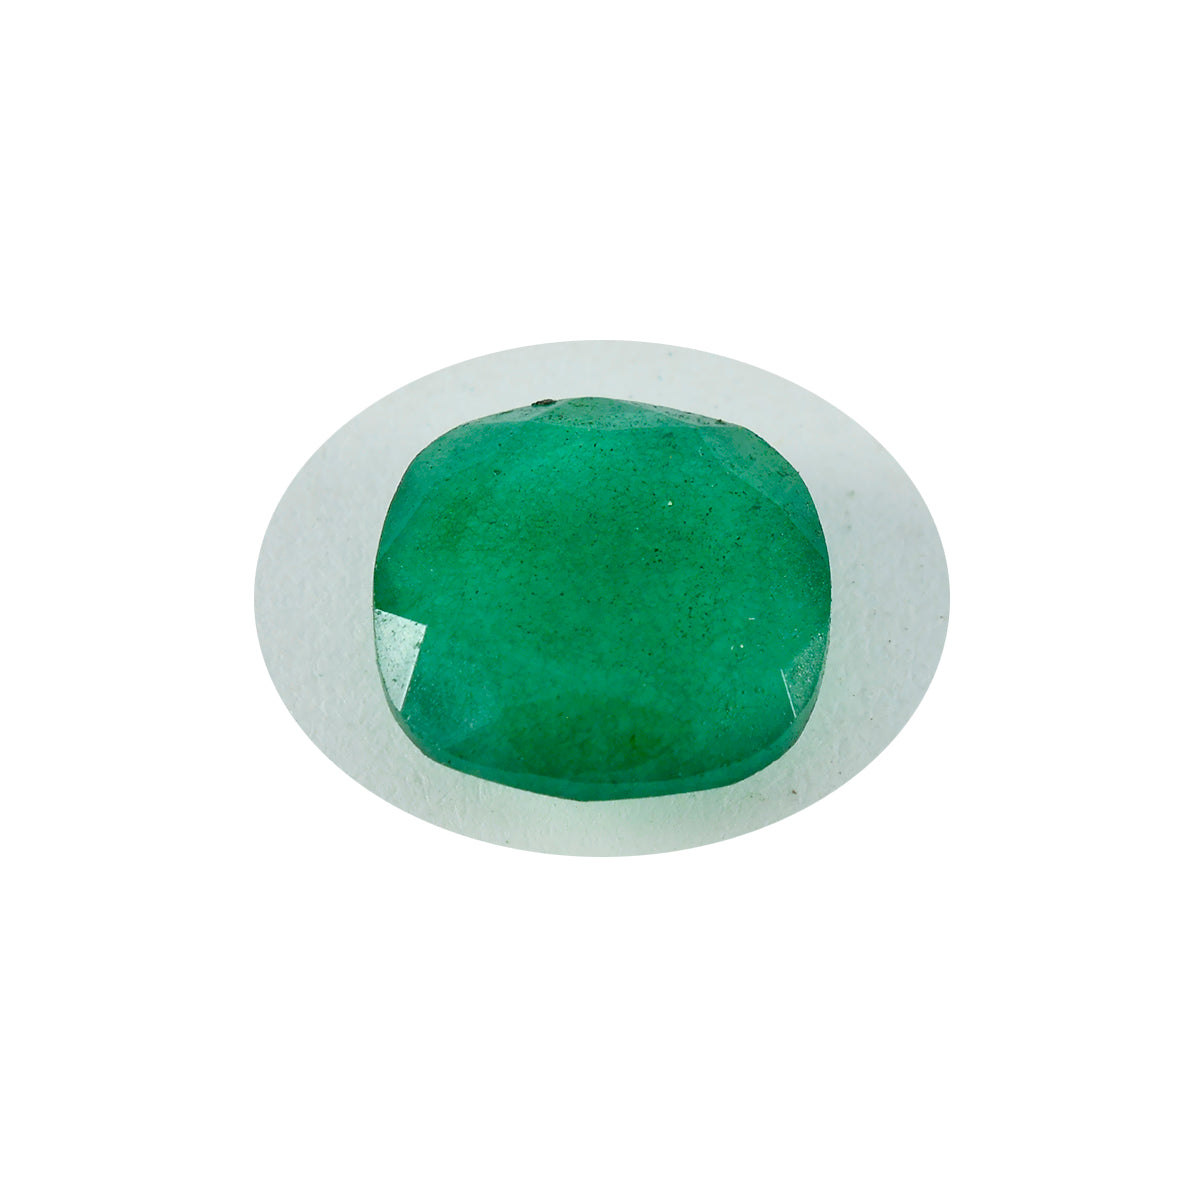 riyogems 1pc 本物のグリーンジャスパー ファセット 10x10 mm クッション形状のハンサムな品質の宝石